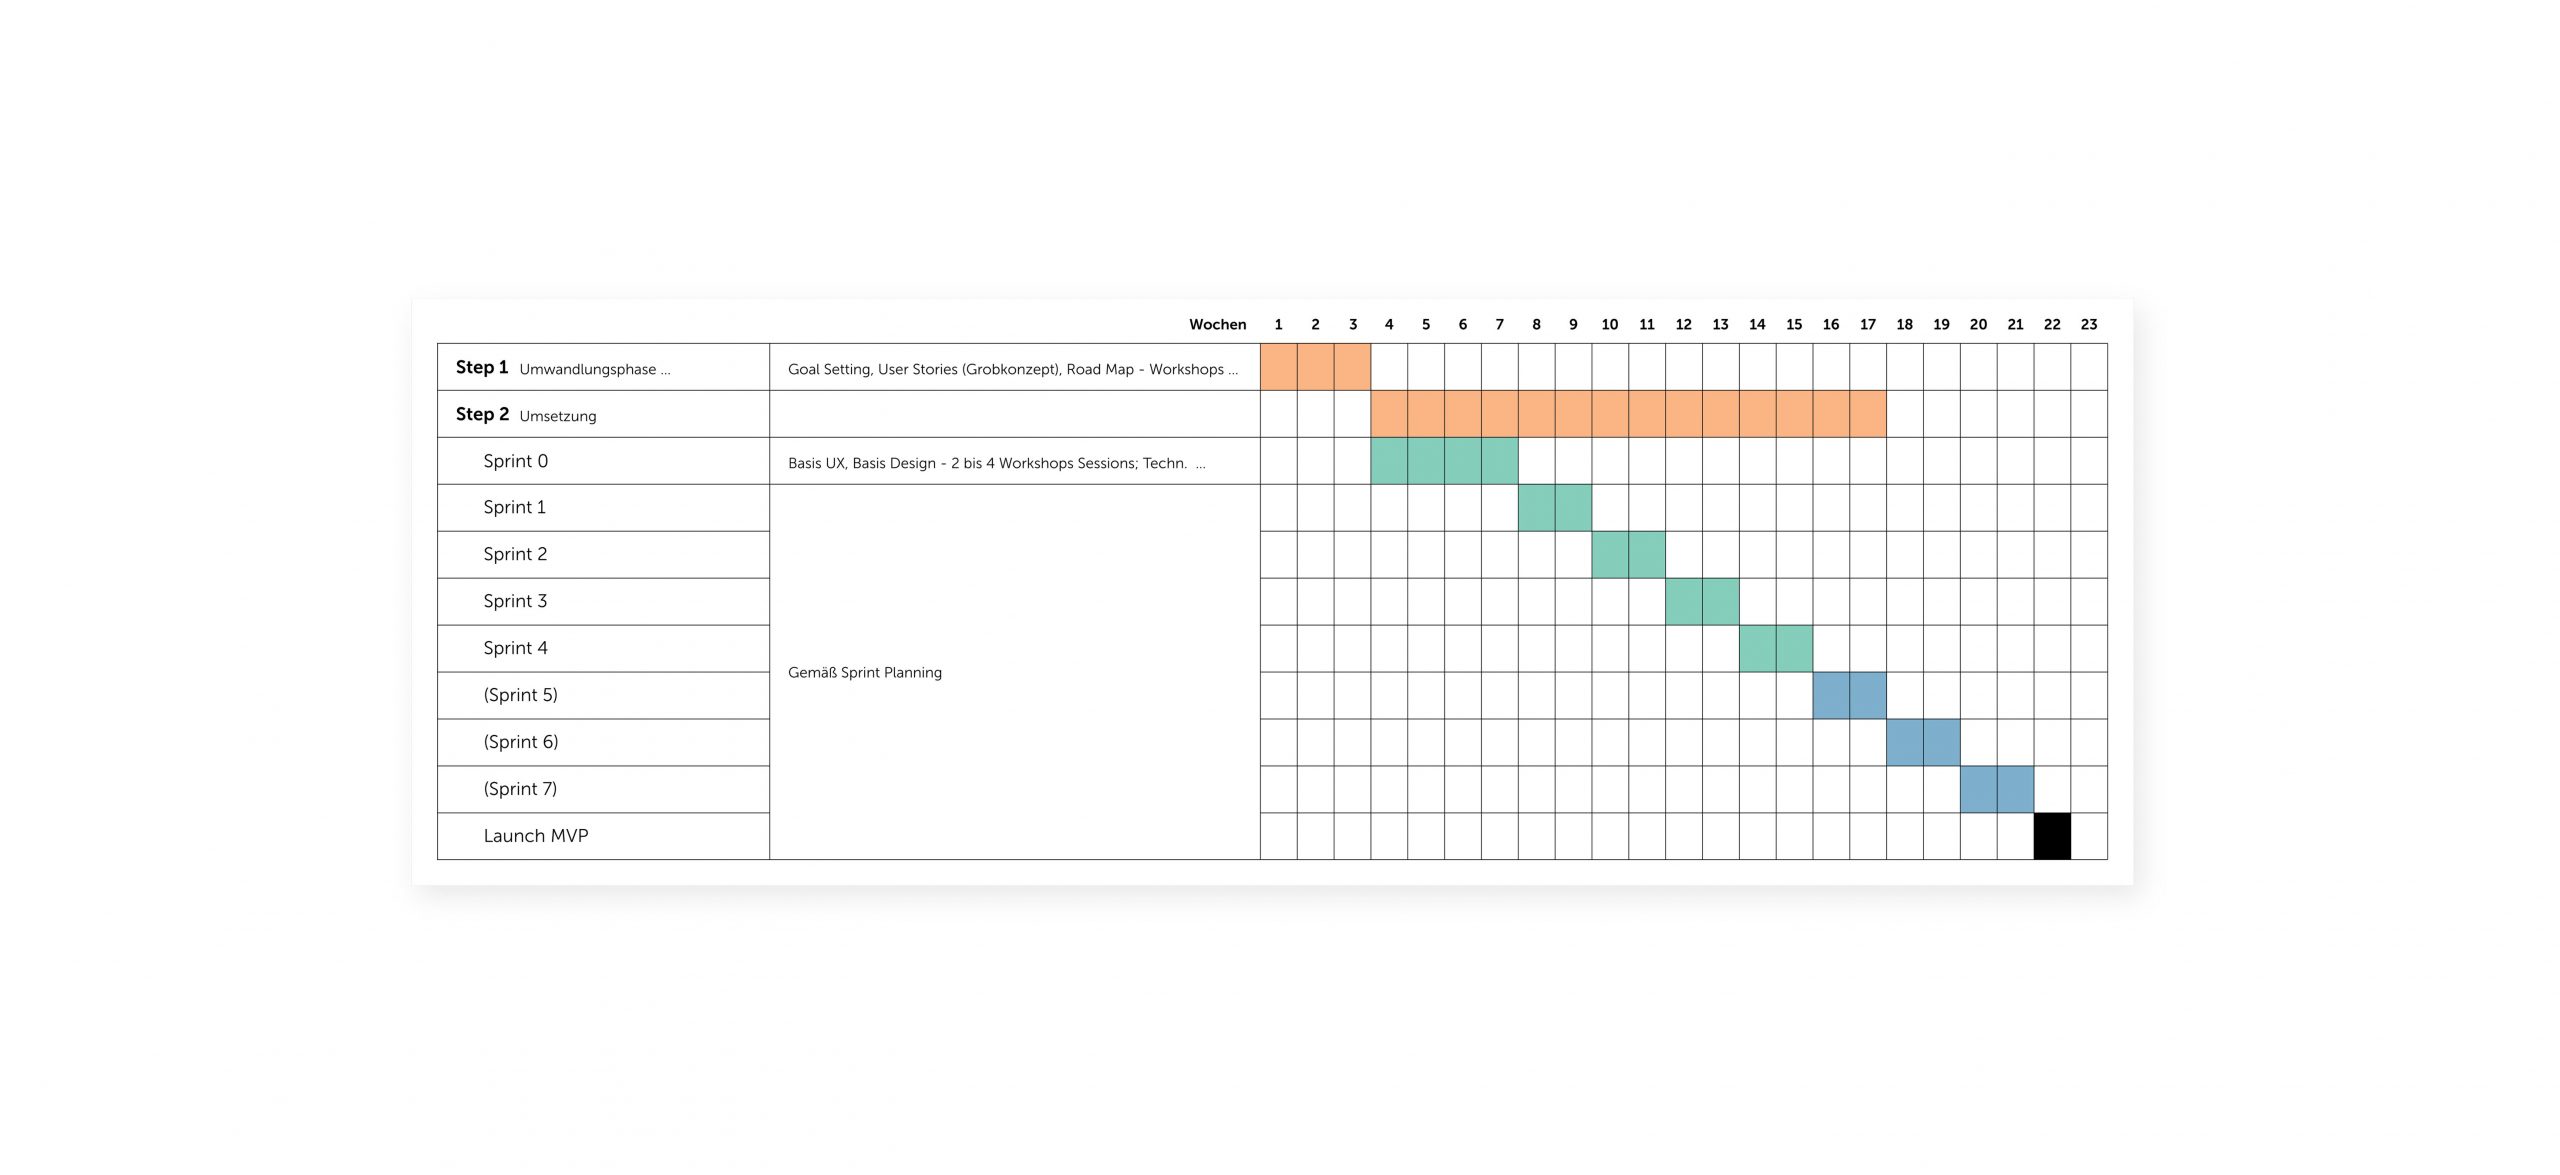 Der Zeitplan für agile Projekte, von der Umwandlungsphase bis Launch in 2 Wochen.